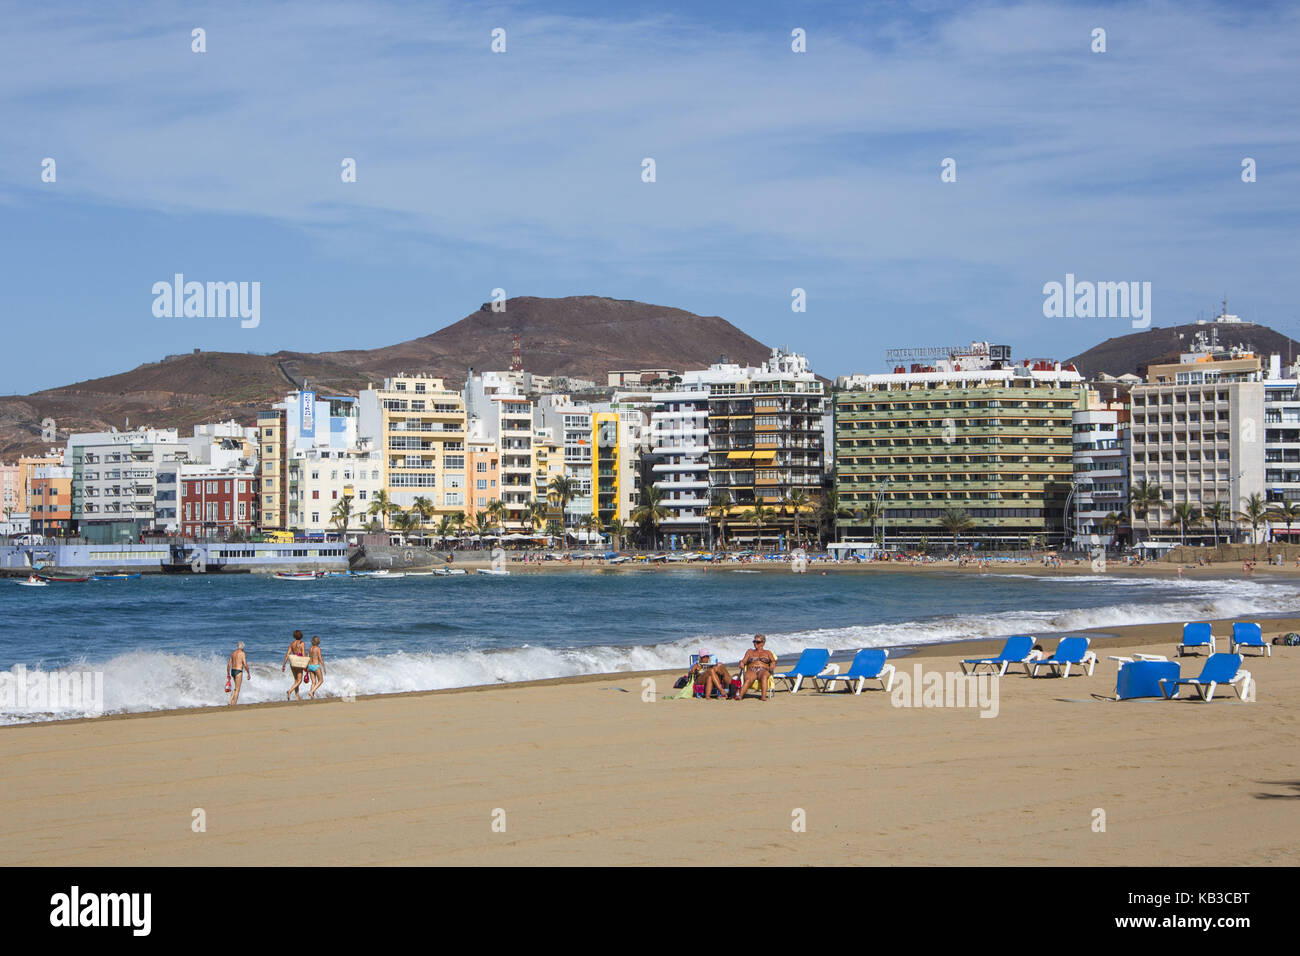 Spain, Canary islands, Gran Canaria, Las of Palma, beach, Playa de las Canteras, Stock Photo